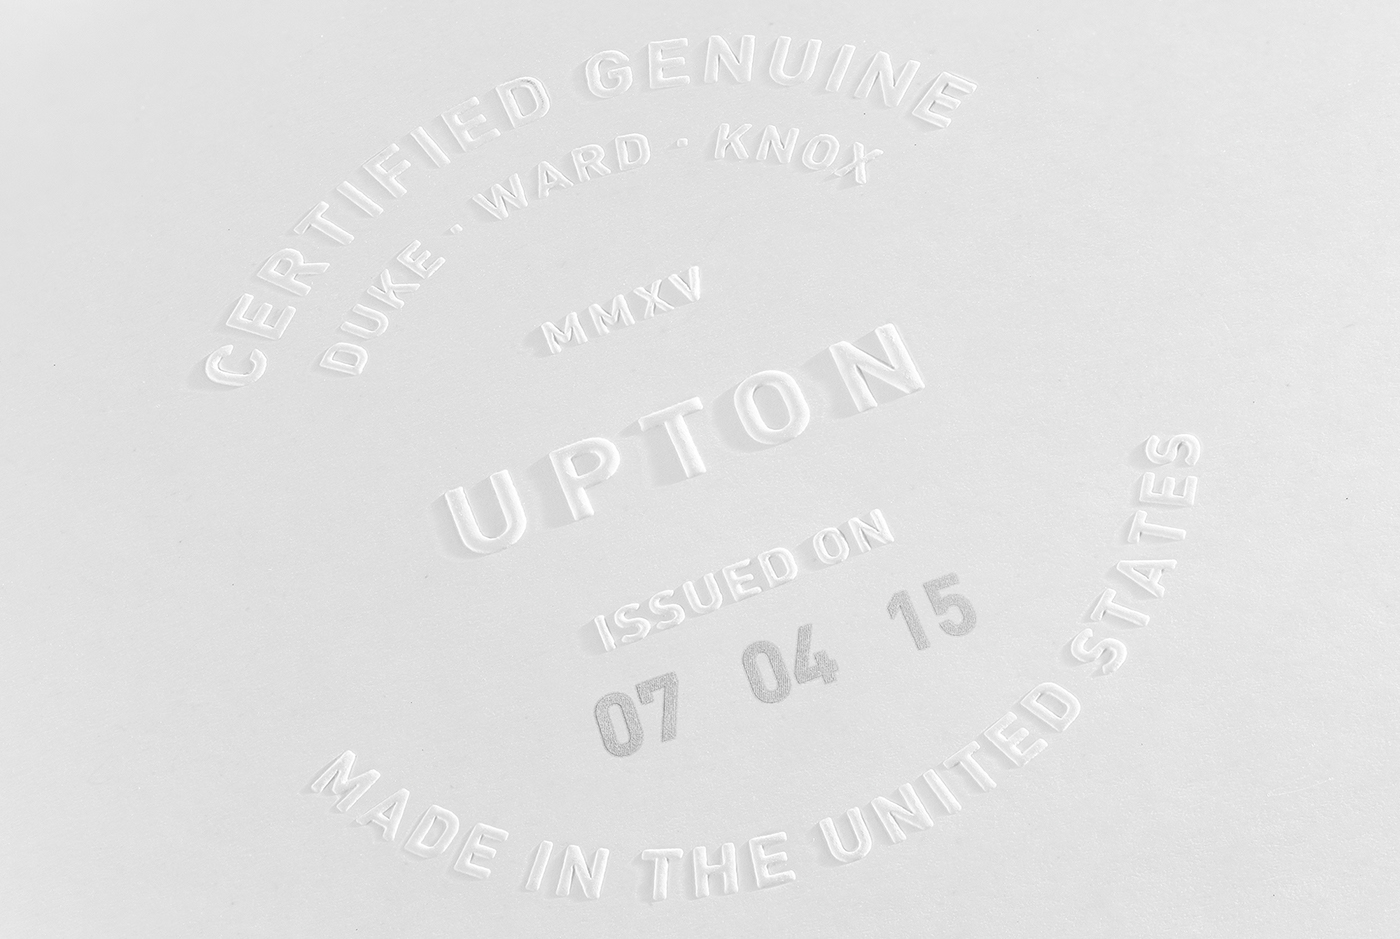 Upton Upton Belts luxury premium leather minimal minimalist logo design identity wordmark white on white clean modern grids brand book